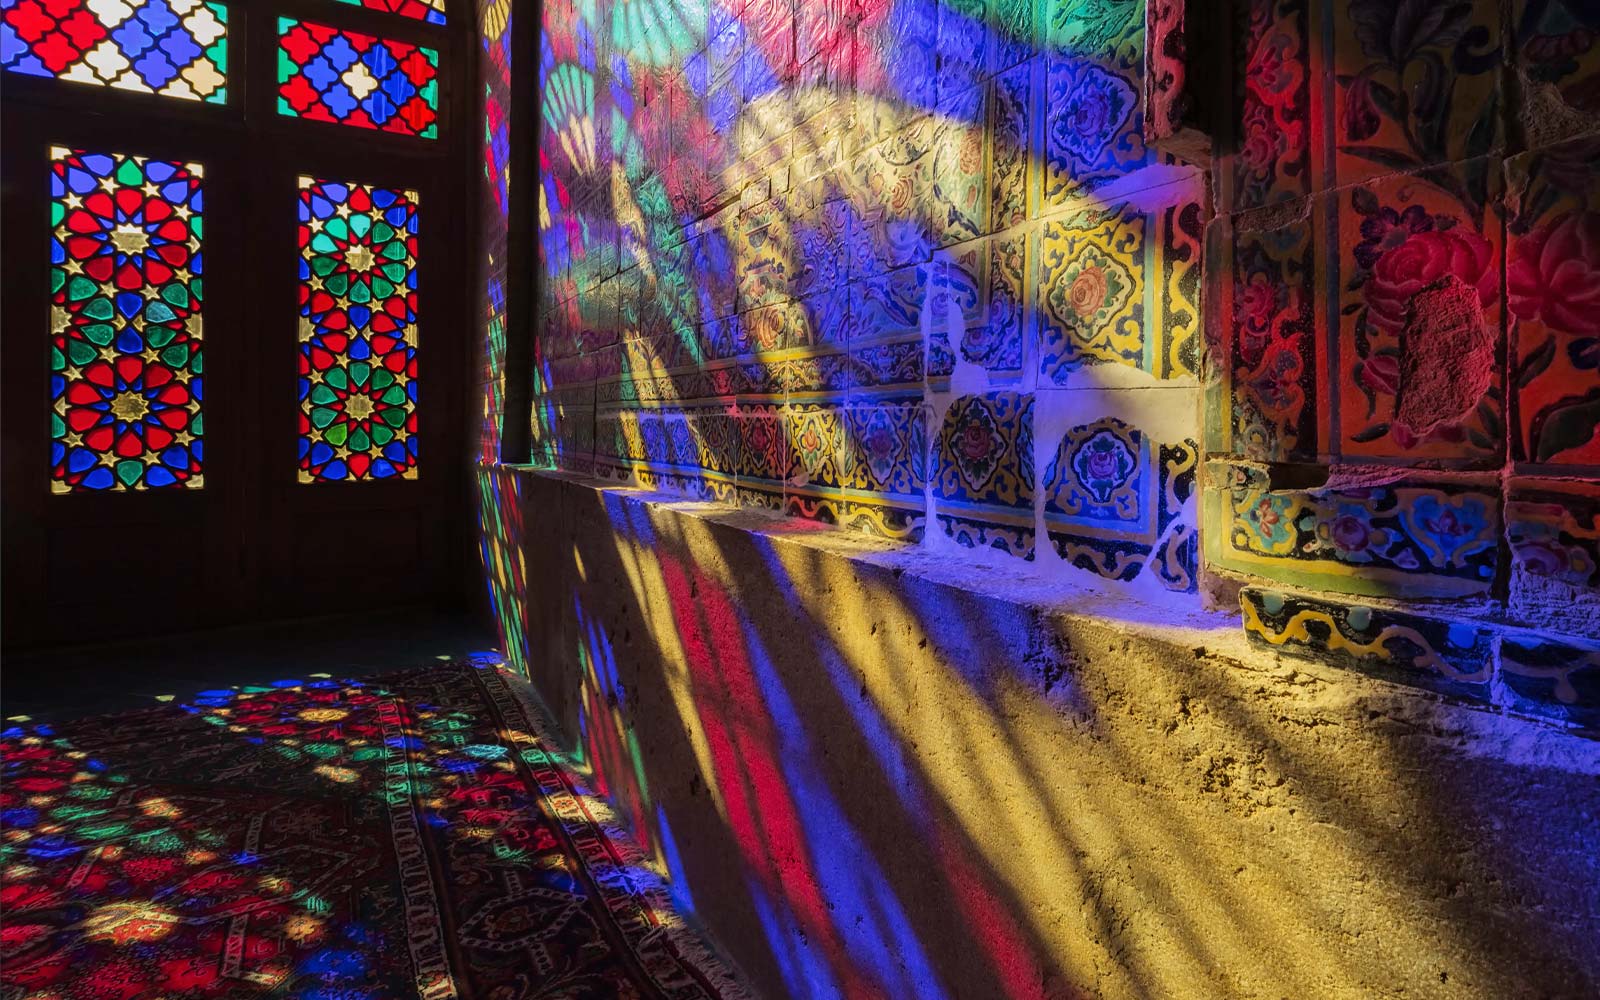 Prizor, ki prikazuje filtriranje svetlobe skozi vitraže in projiciranje barv na steno (predvajanje videa).